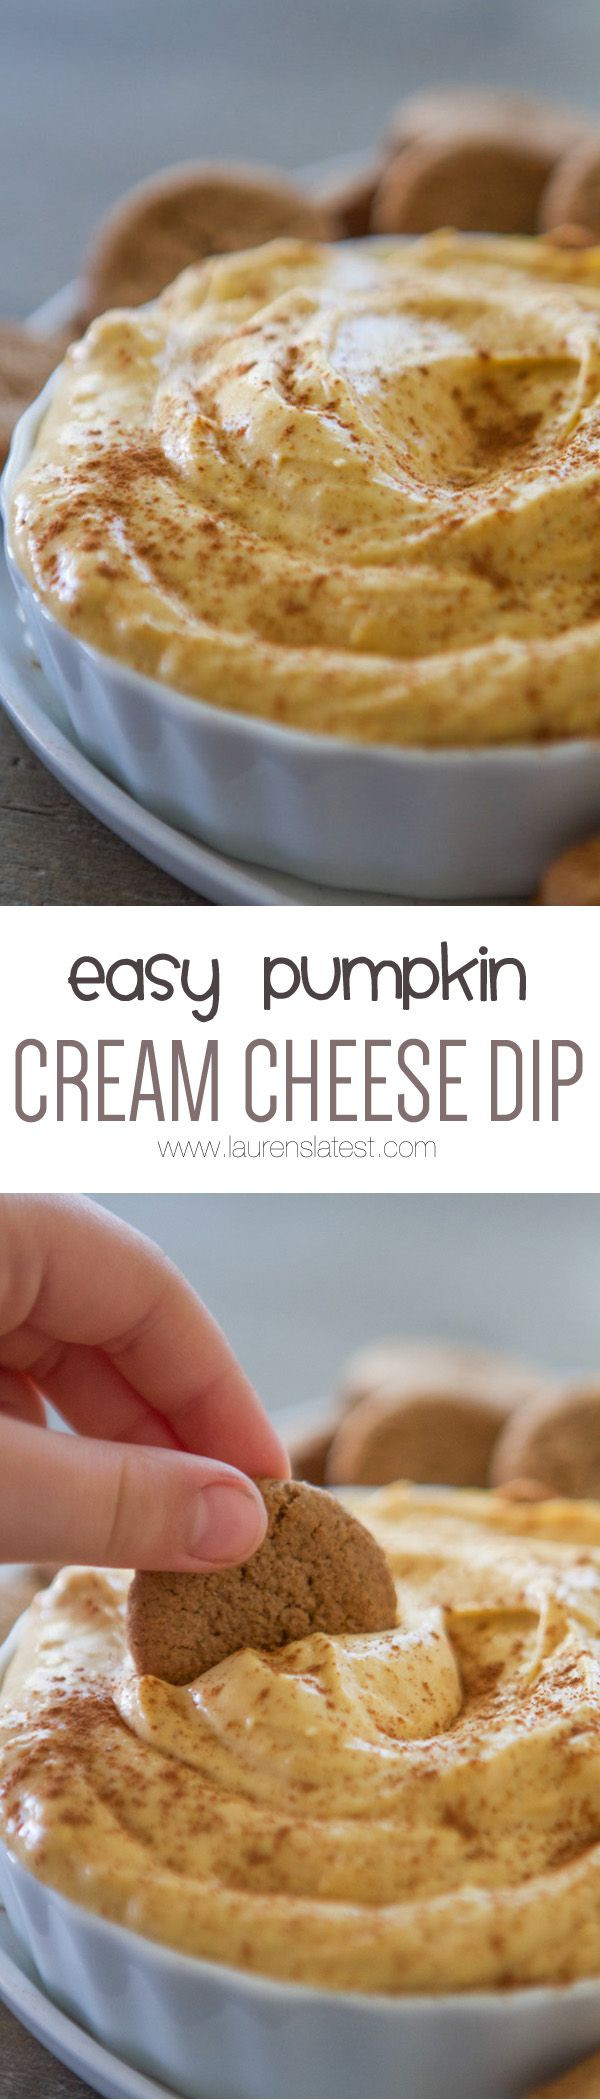 Pumpkin Cream Cheese Dip Recipes
 Pumpkin Cream Cheese Dip Recipe